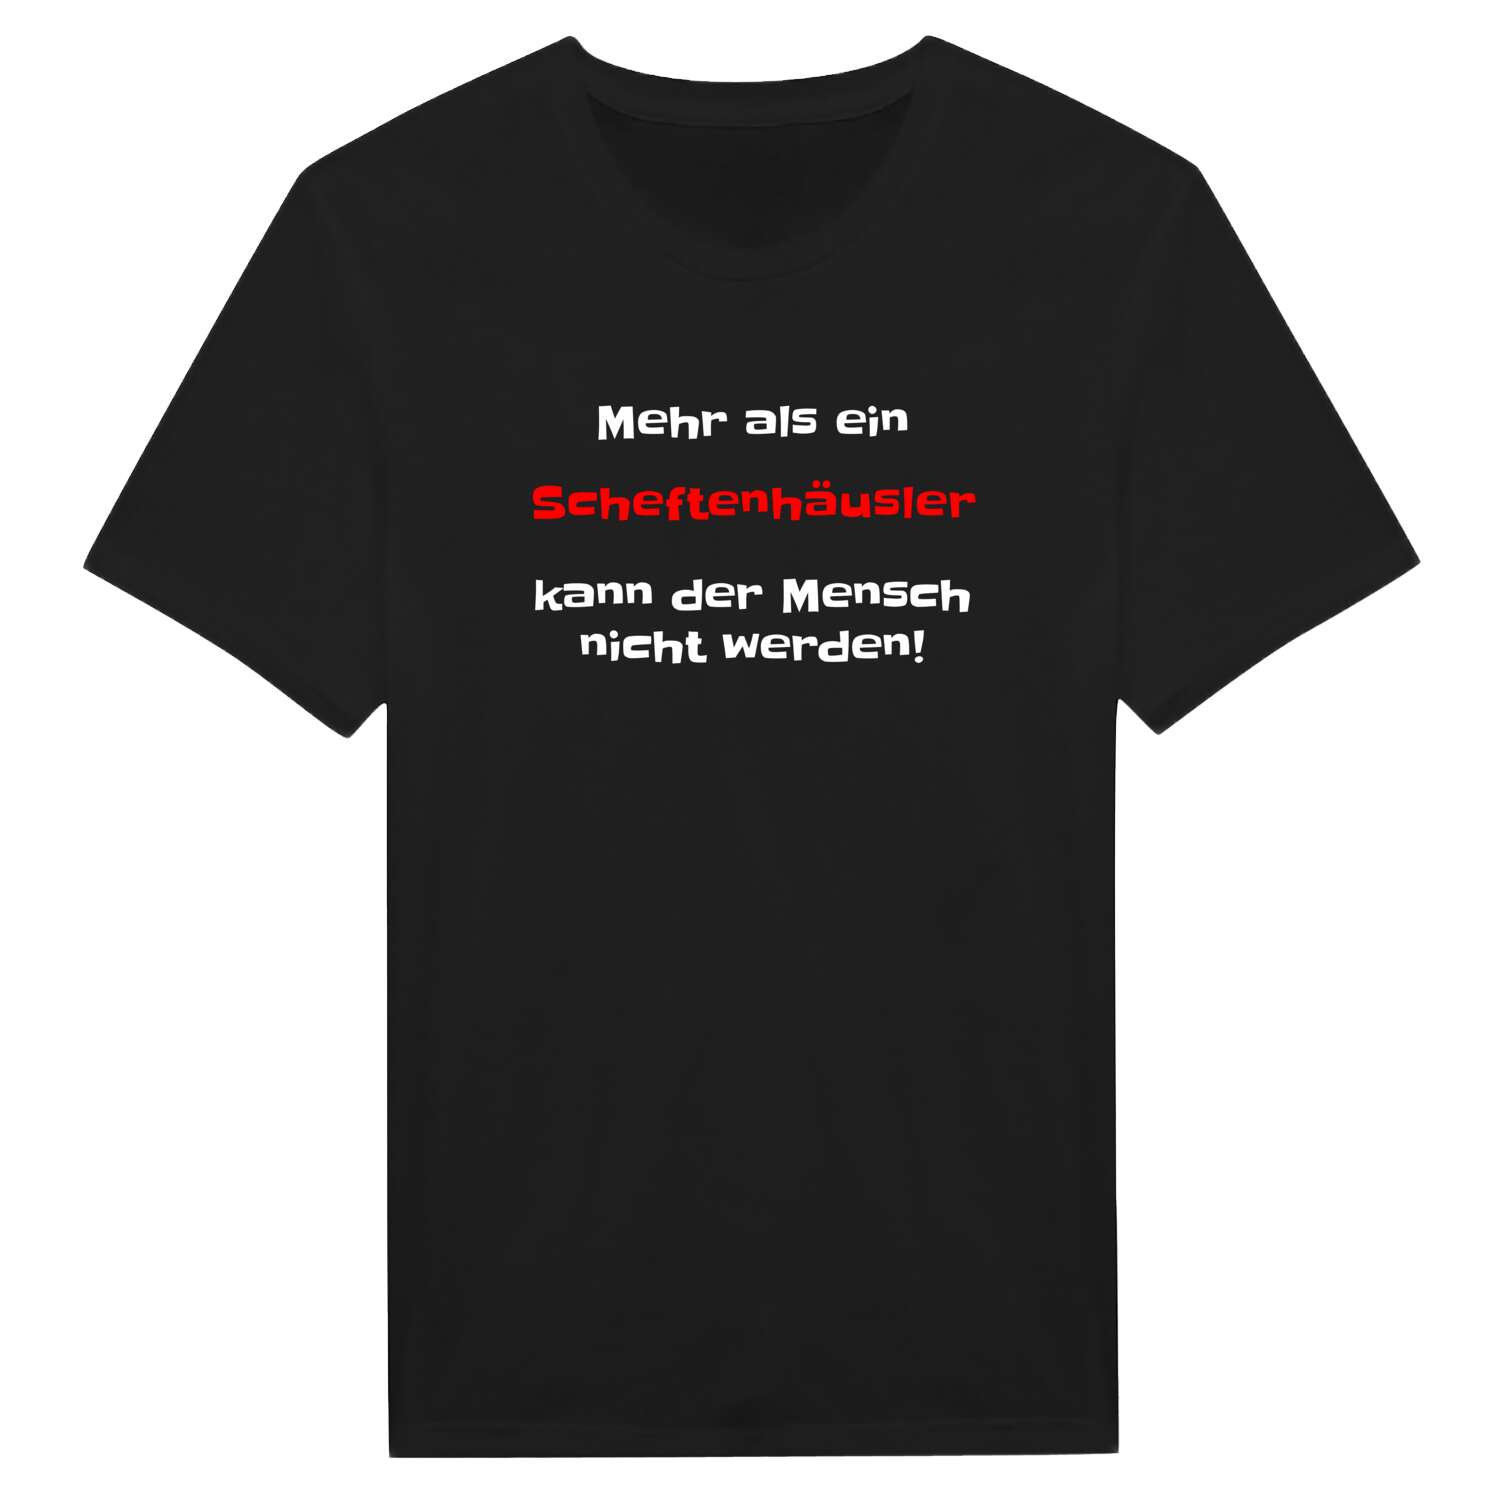 Scheftenhäusl T-Shirt »Mehr als ein«